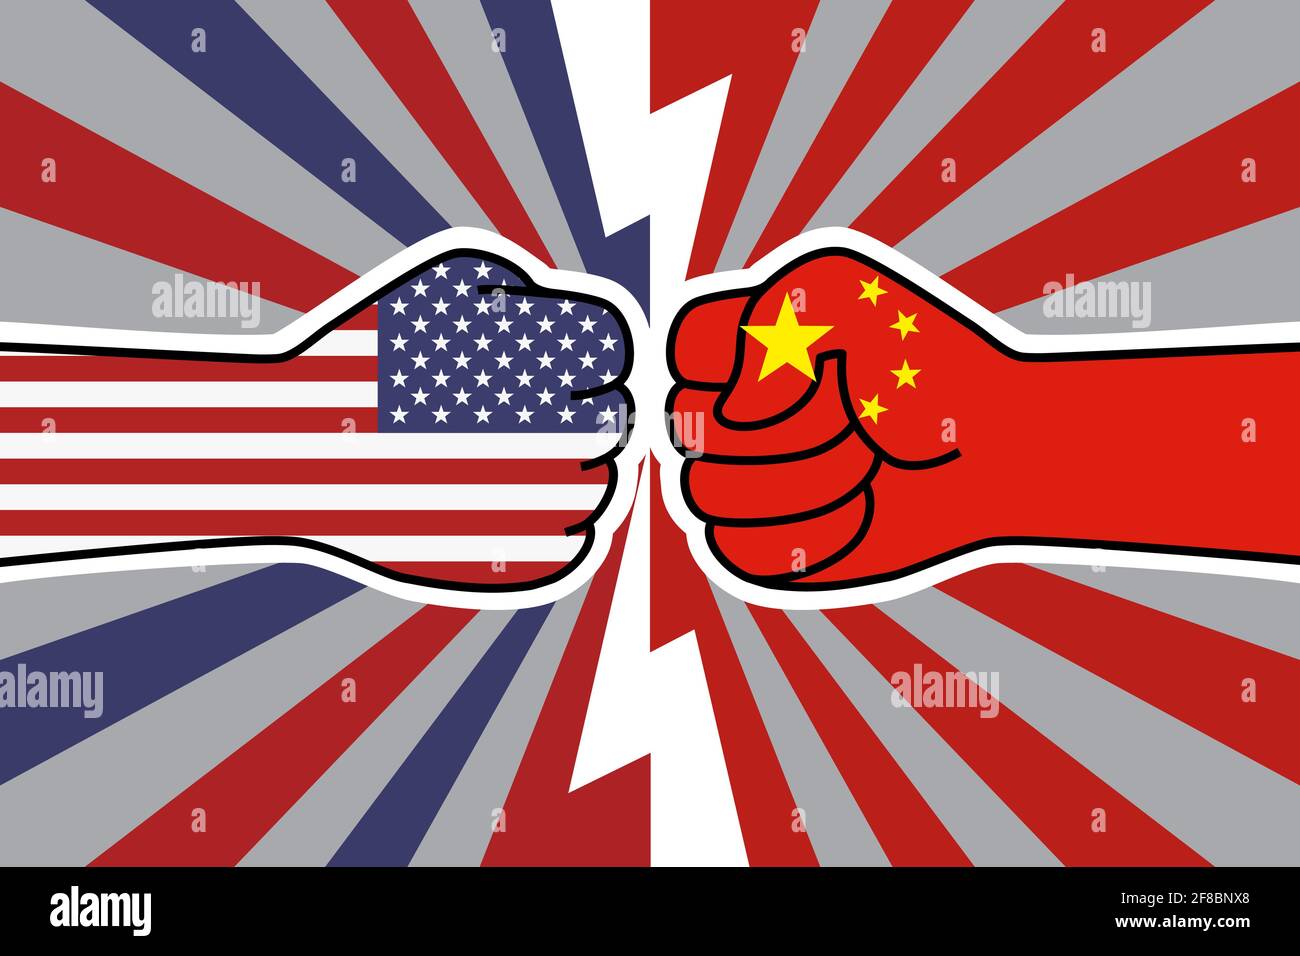 USA China Handelskrieg. US-Flagge Faust vs china Flagge Faust. Wirtschaftliche Konfrontation zwischen Amerika und china. Vektor flache Symbol für Web-Banner, Beiträge Stock Vektor